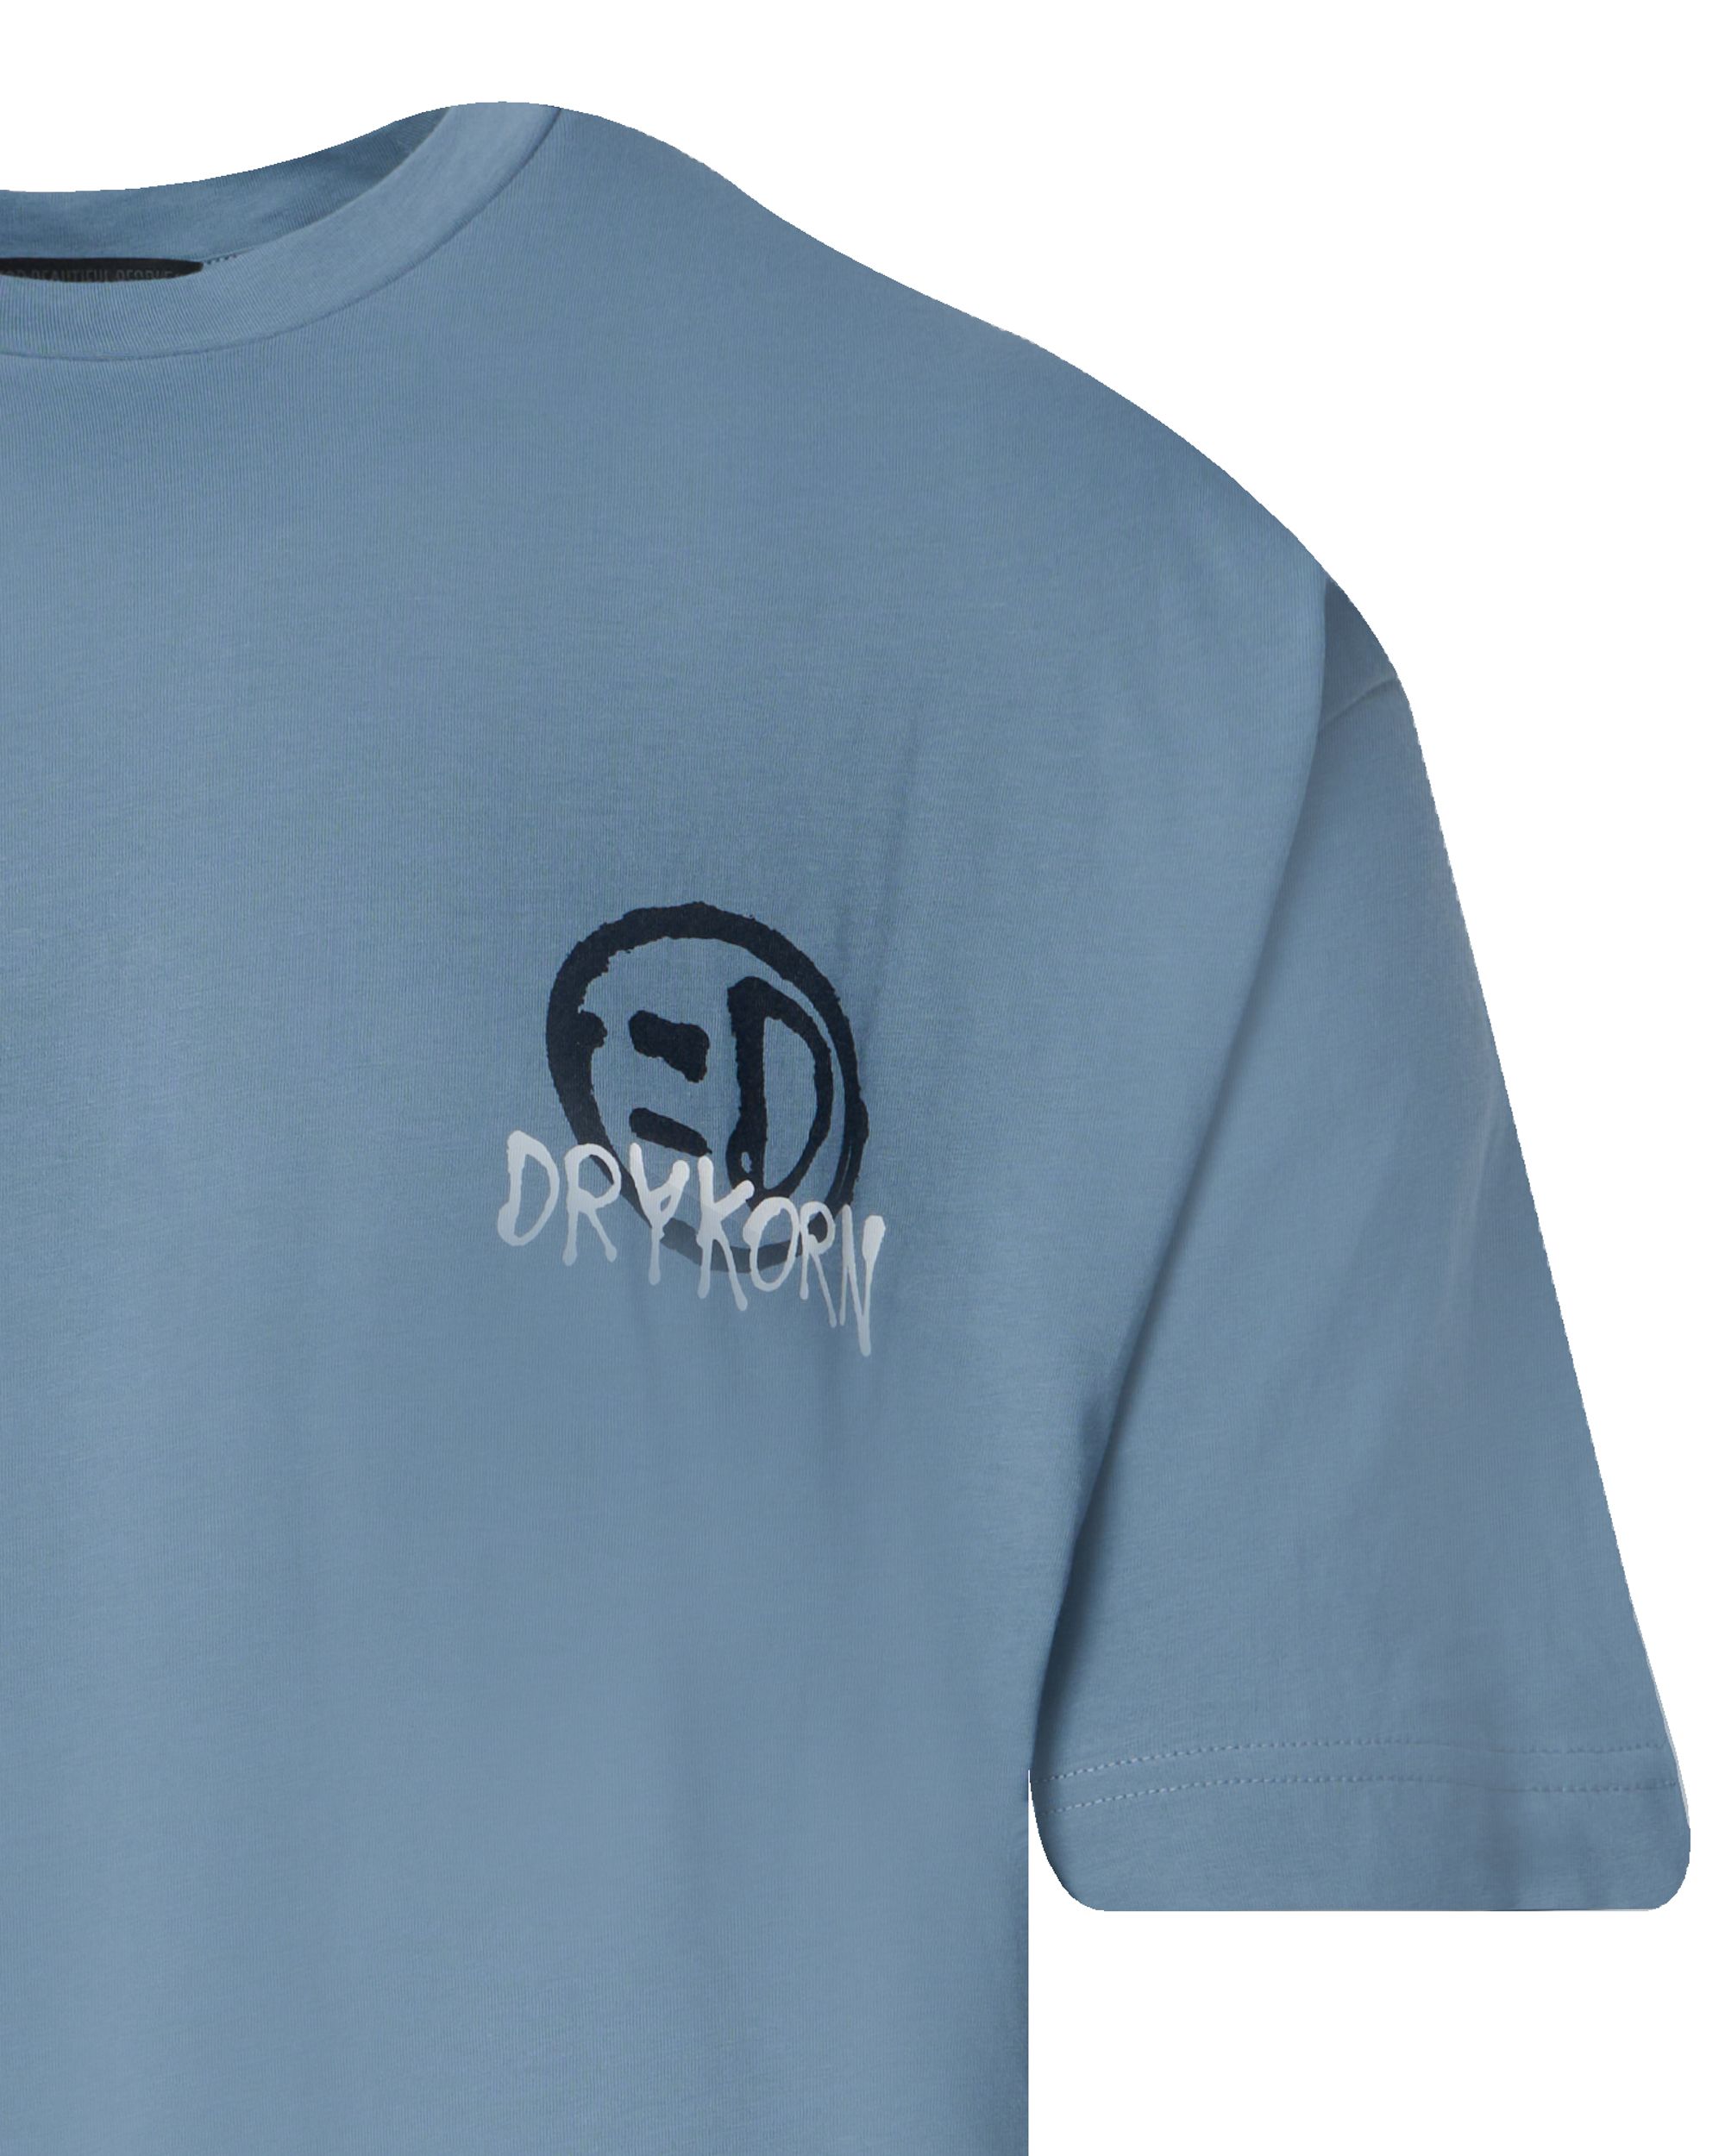 Drykorn Anayo T-shirt KM Blauw 095337-001-L